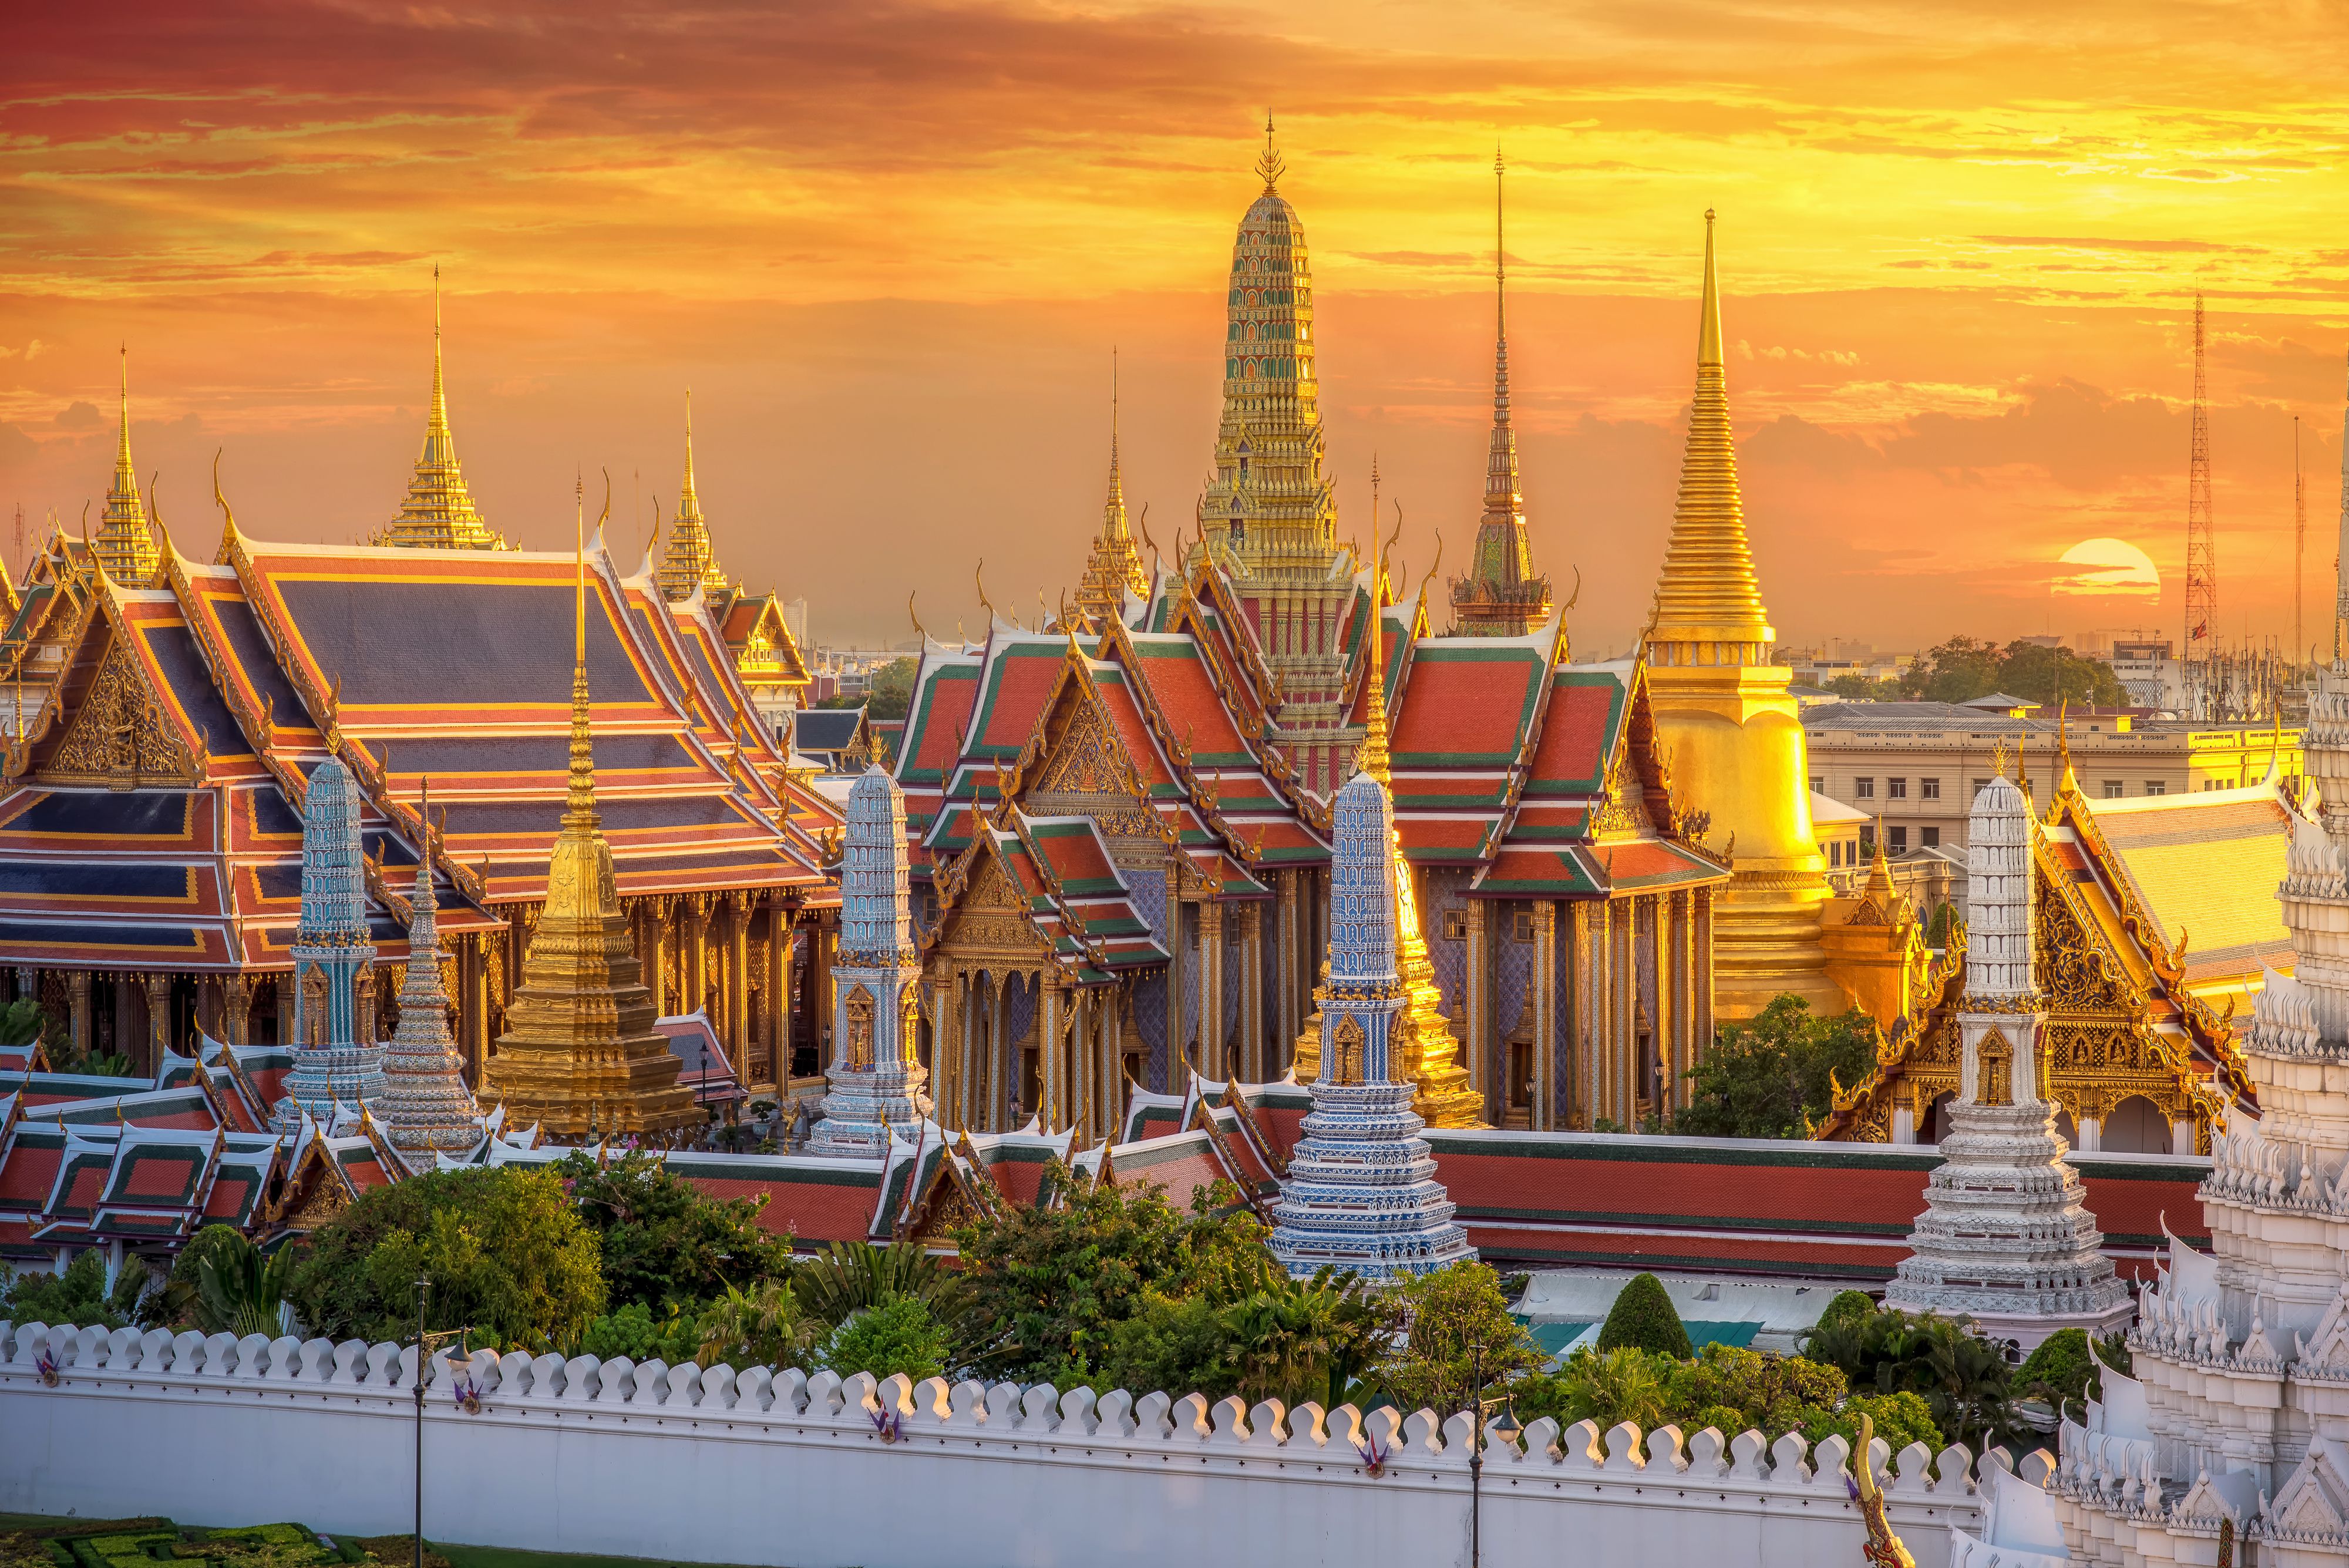 14 Best Temples in Bangkok